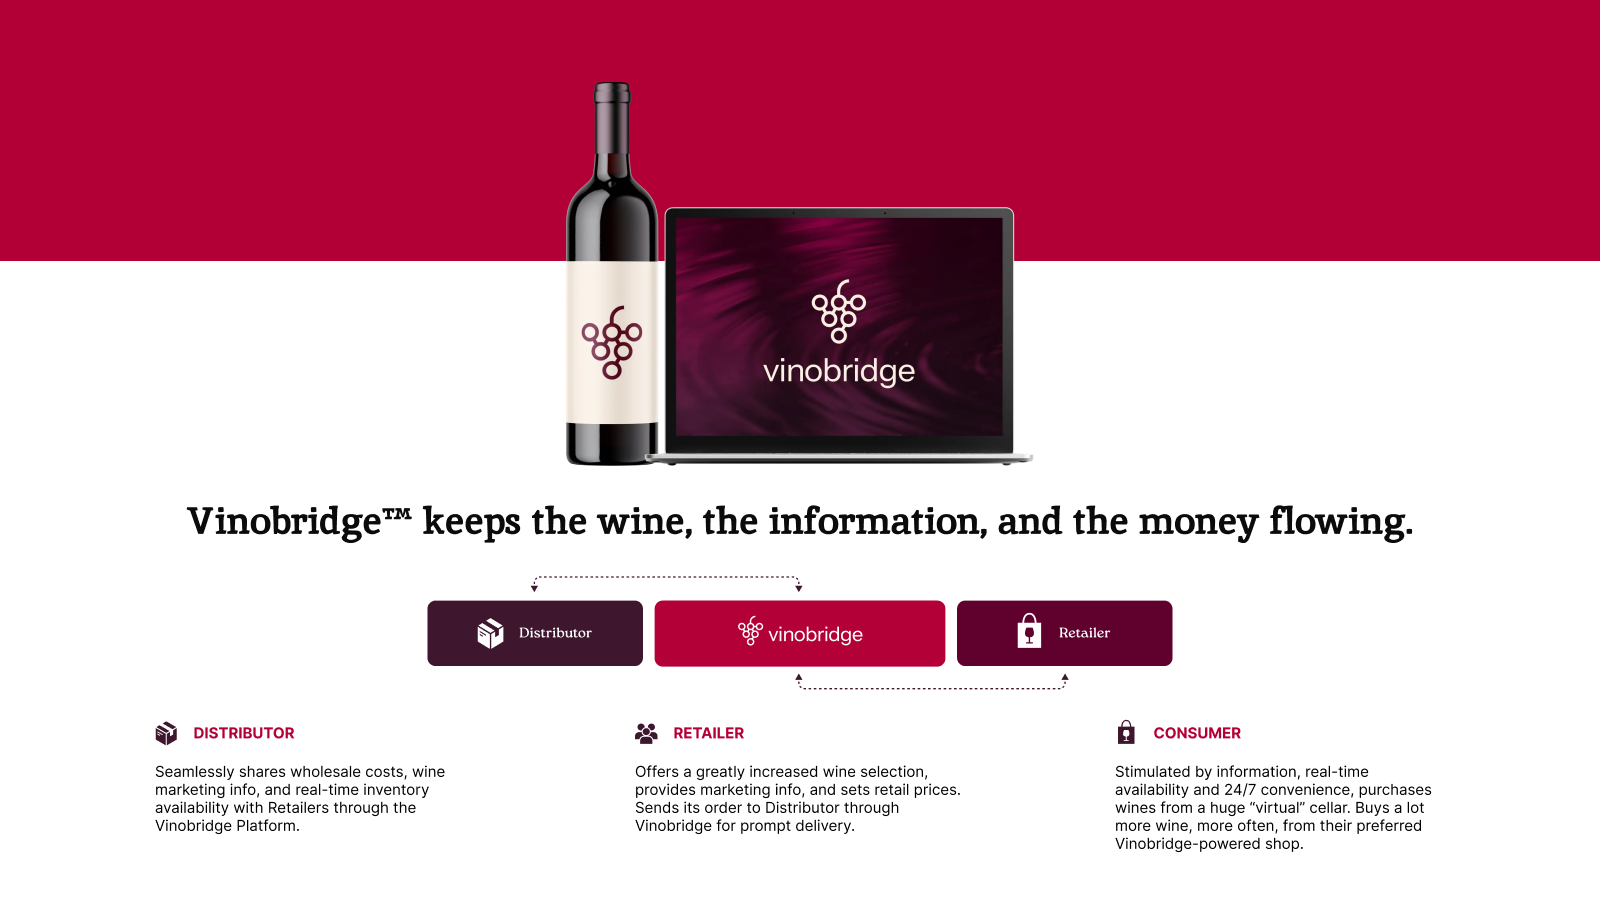 Simplifique los datos de vino al por mayor: costos, marketing, inventario.